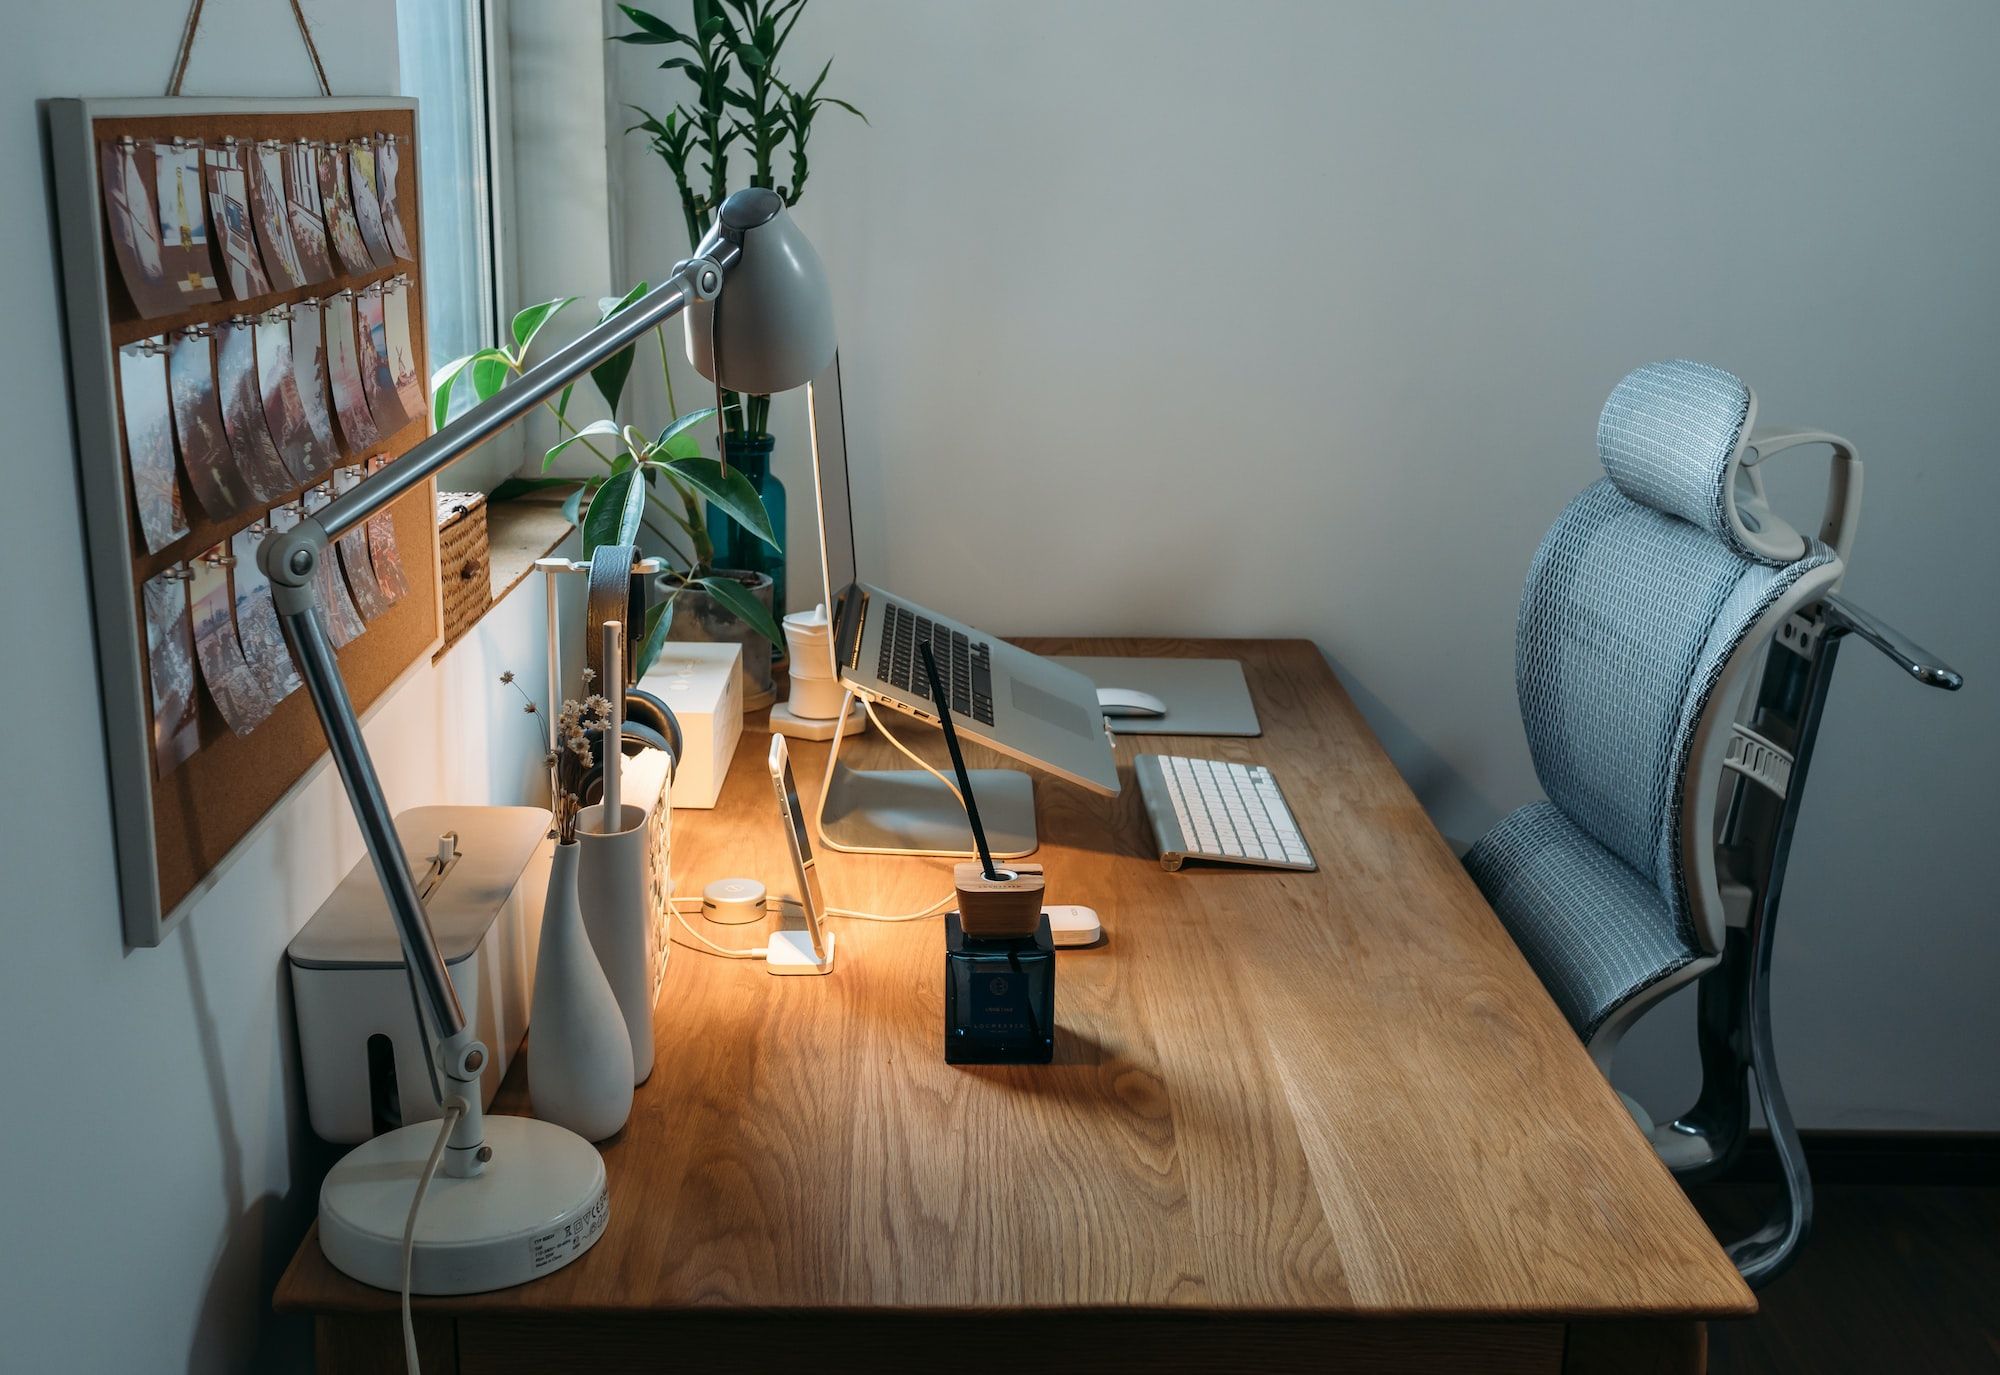 Mesa Escritorio para Tu Casa: Estilo y Funcionalidad